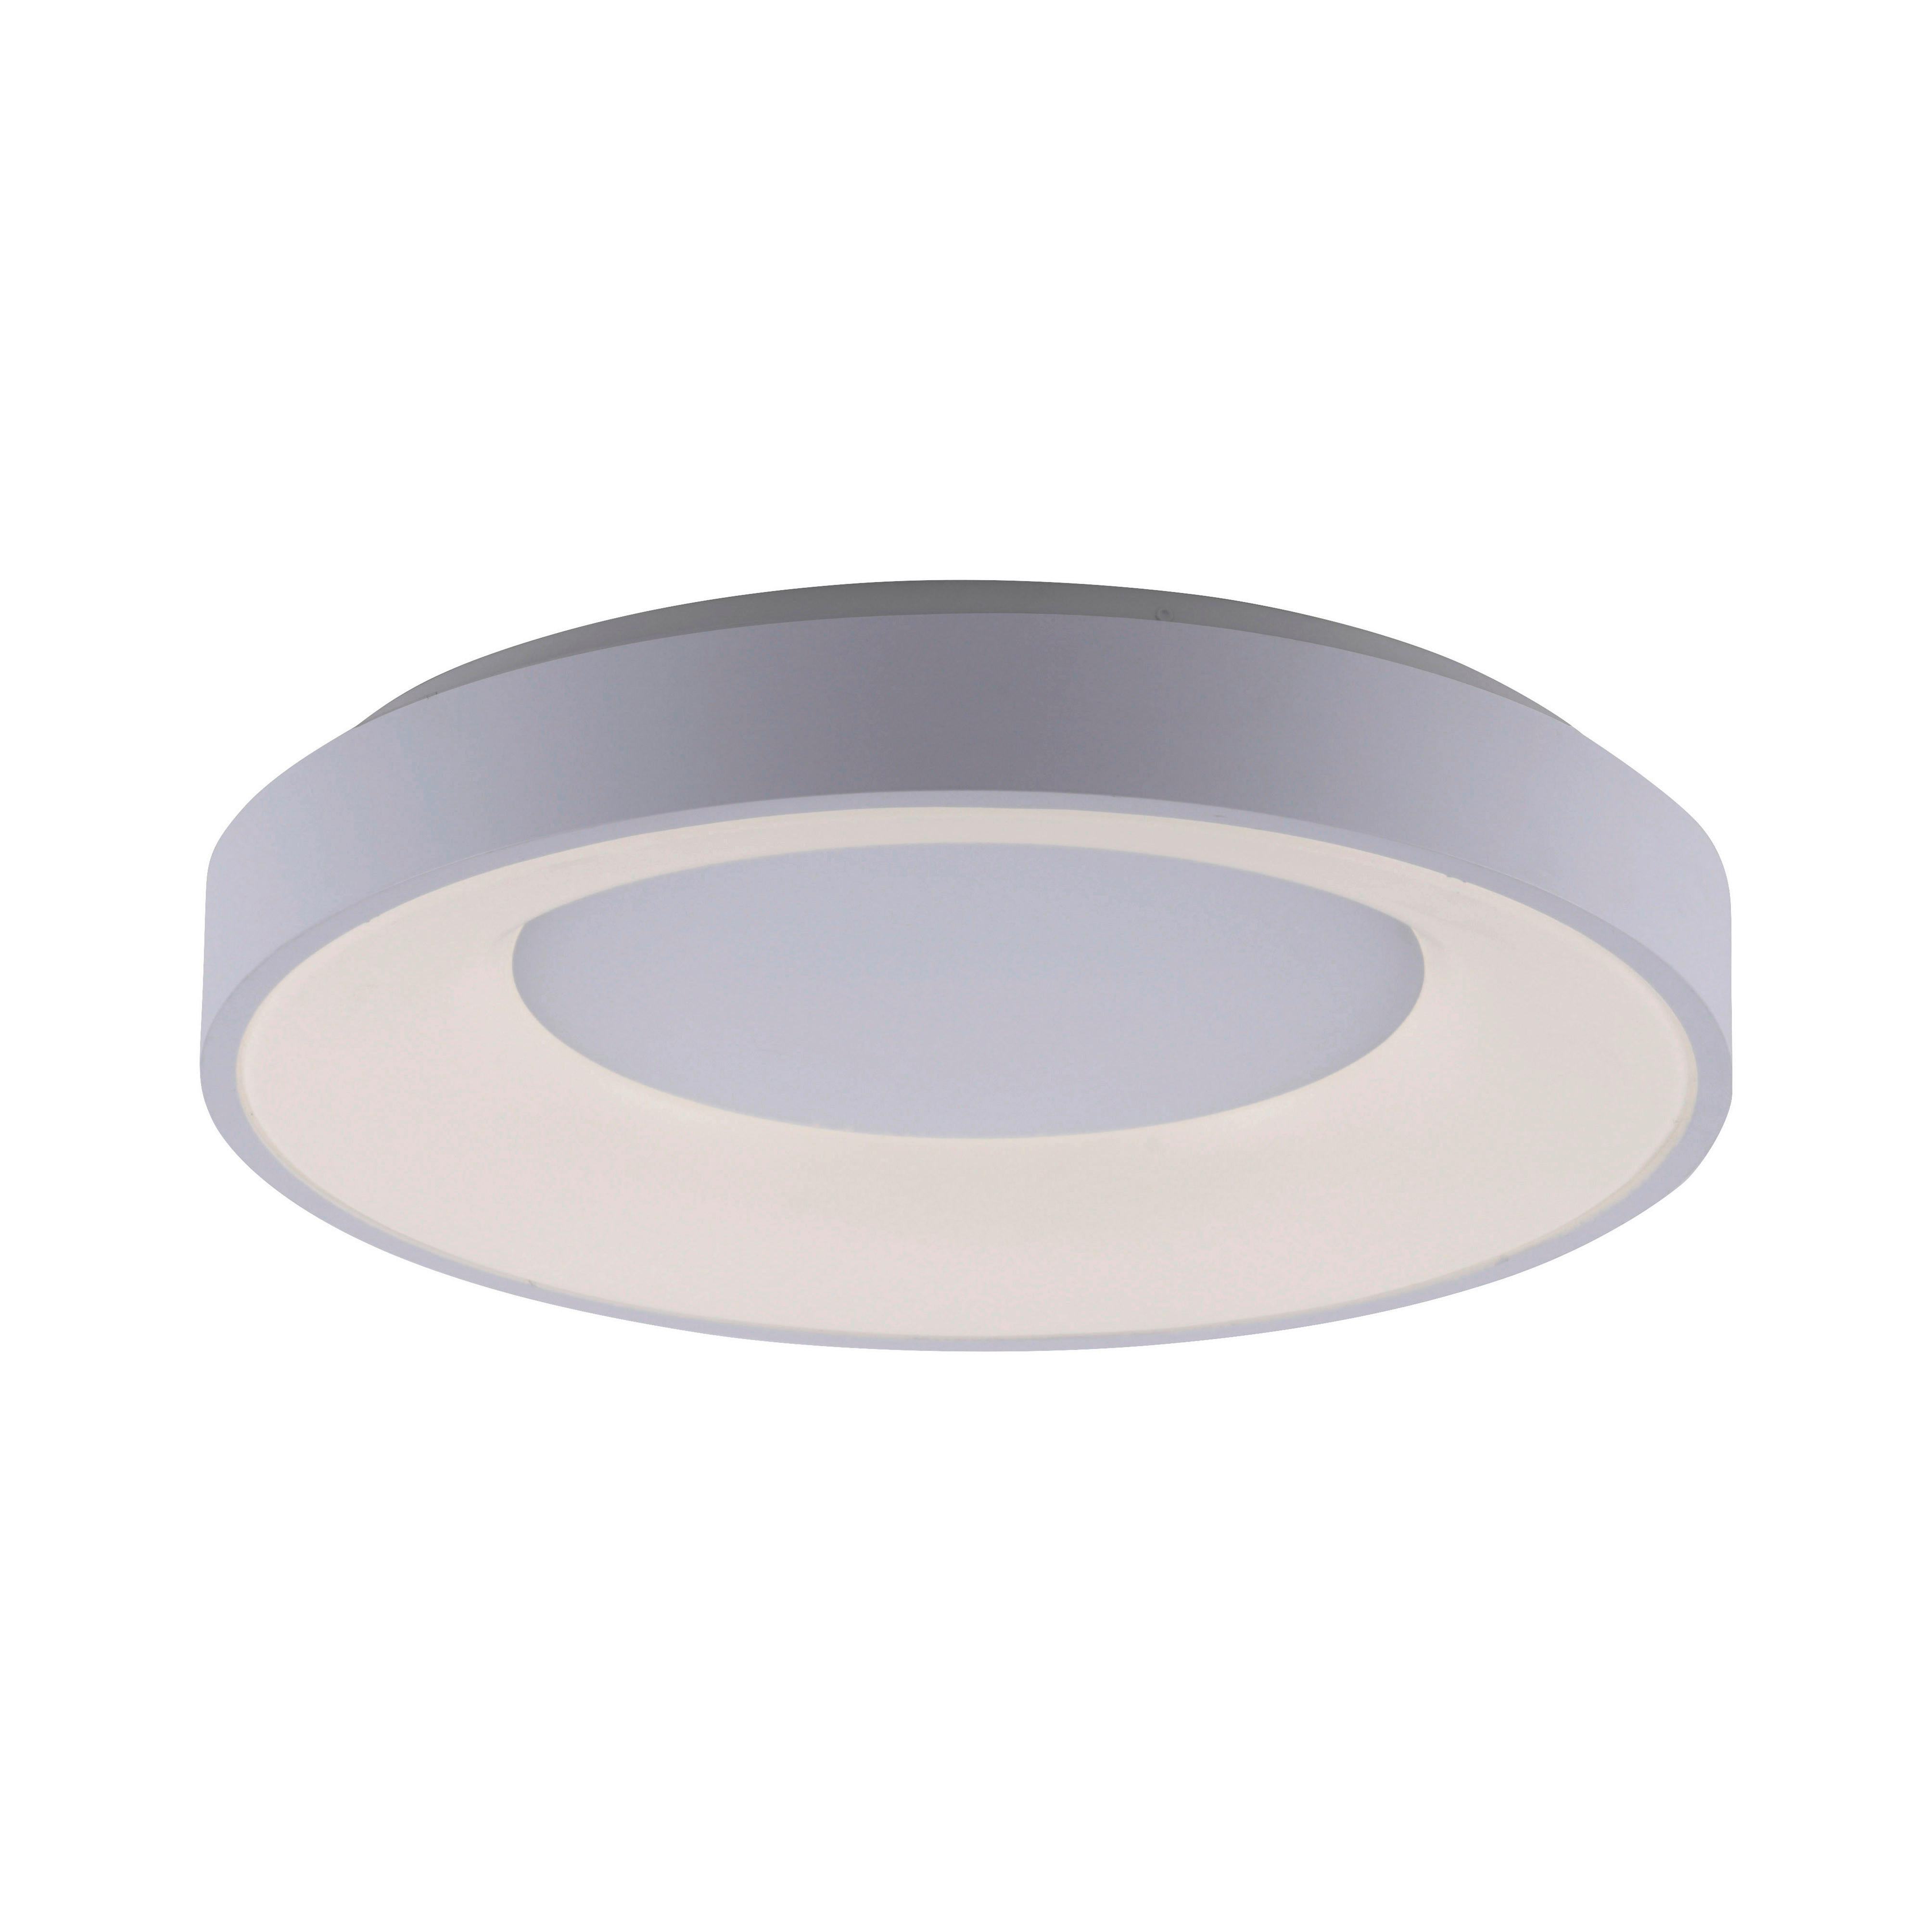 LED-DECKENLEUCHTE 26,5 W    48/48/8 cm  - Weiß, Basics, Kunststoff/Metall (48/48/8cm)